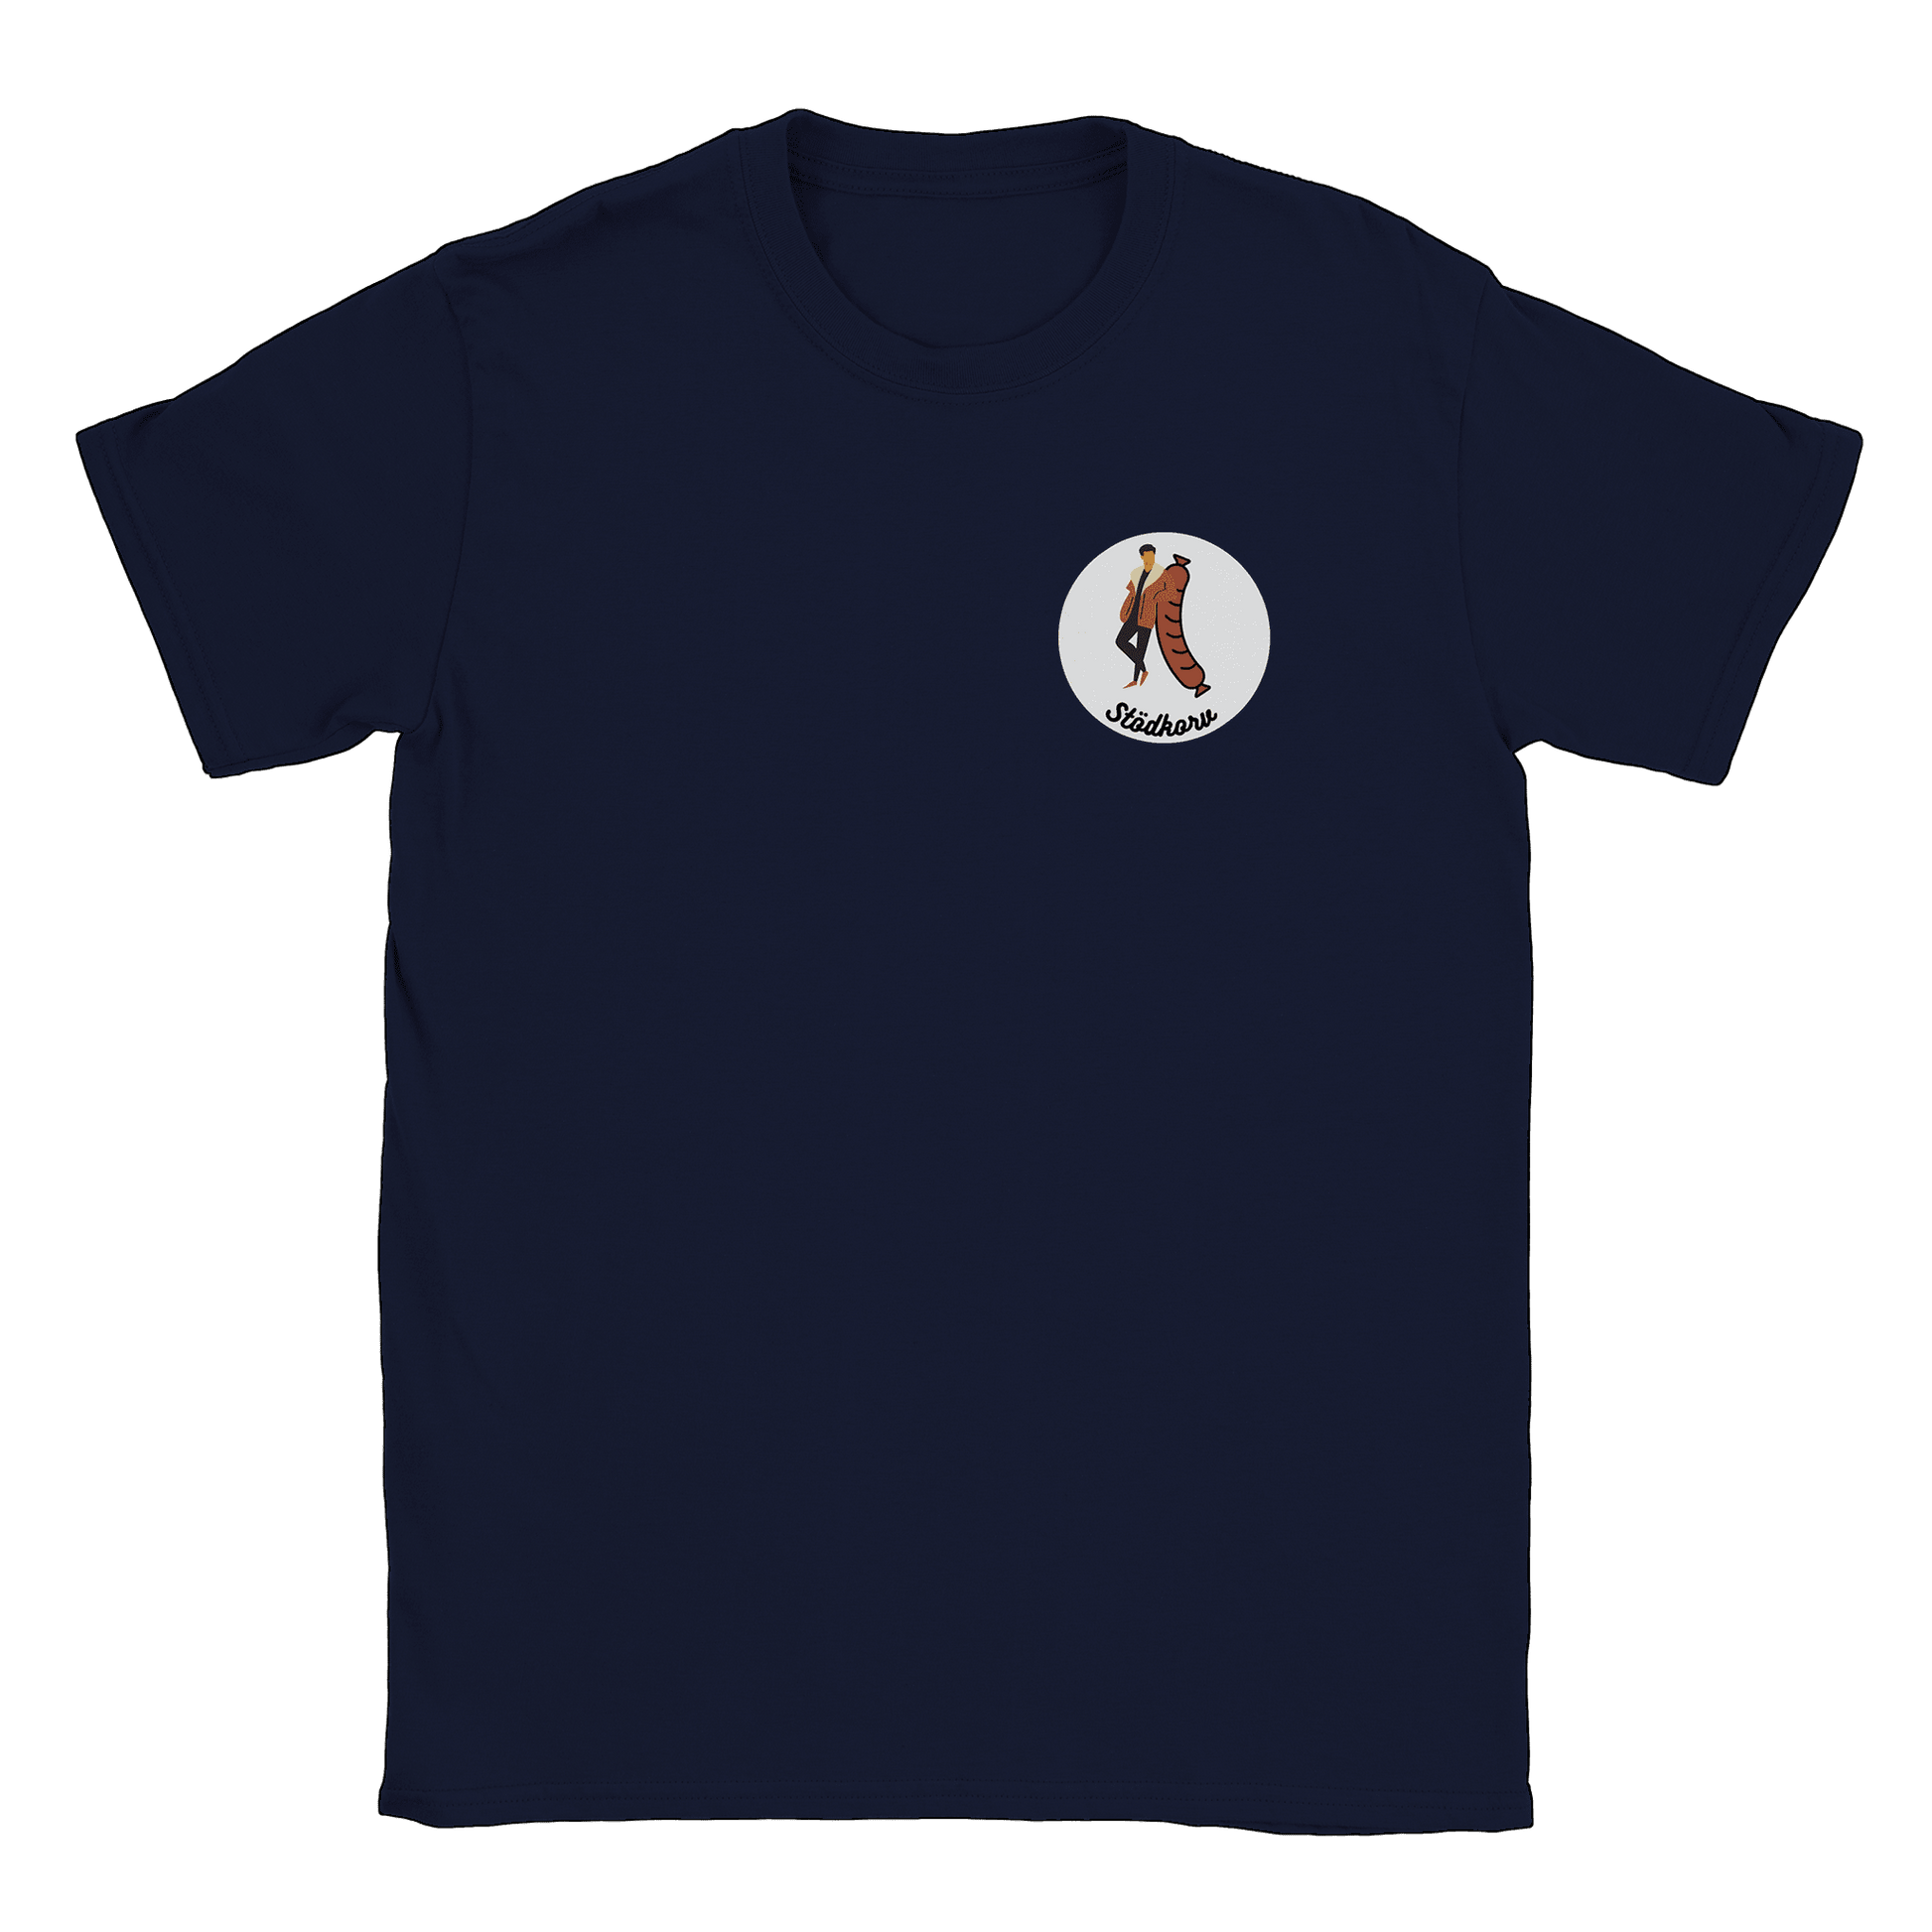 Stödkorven - T-shirt Navy